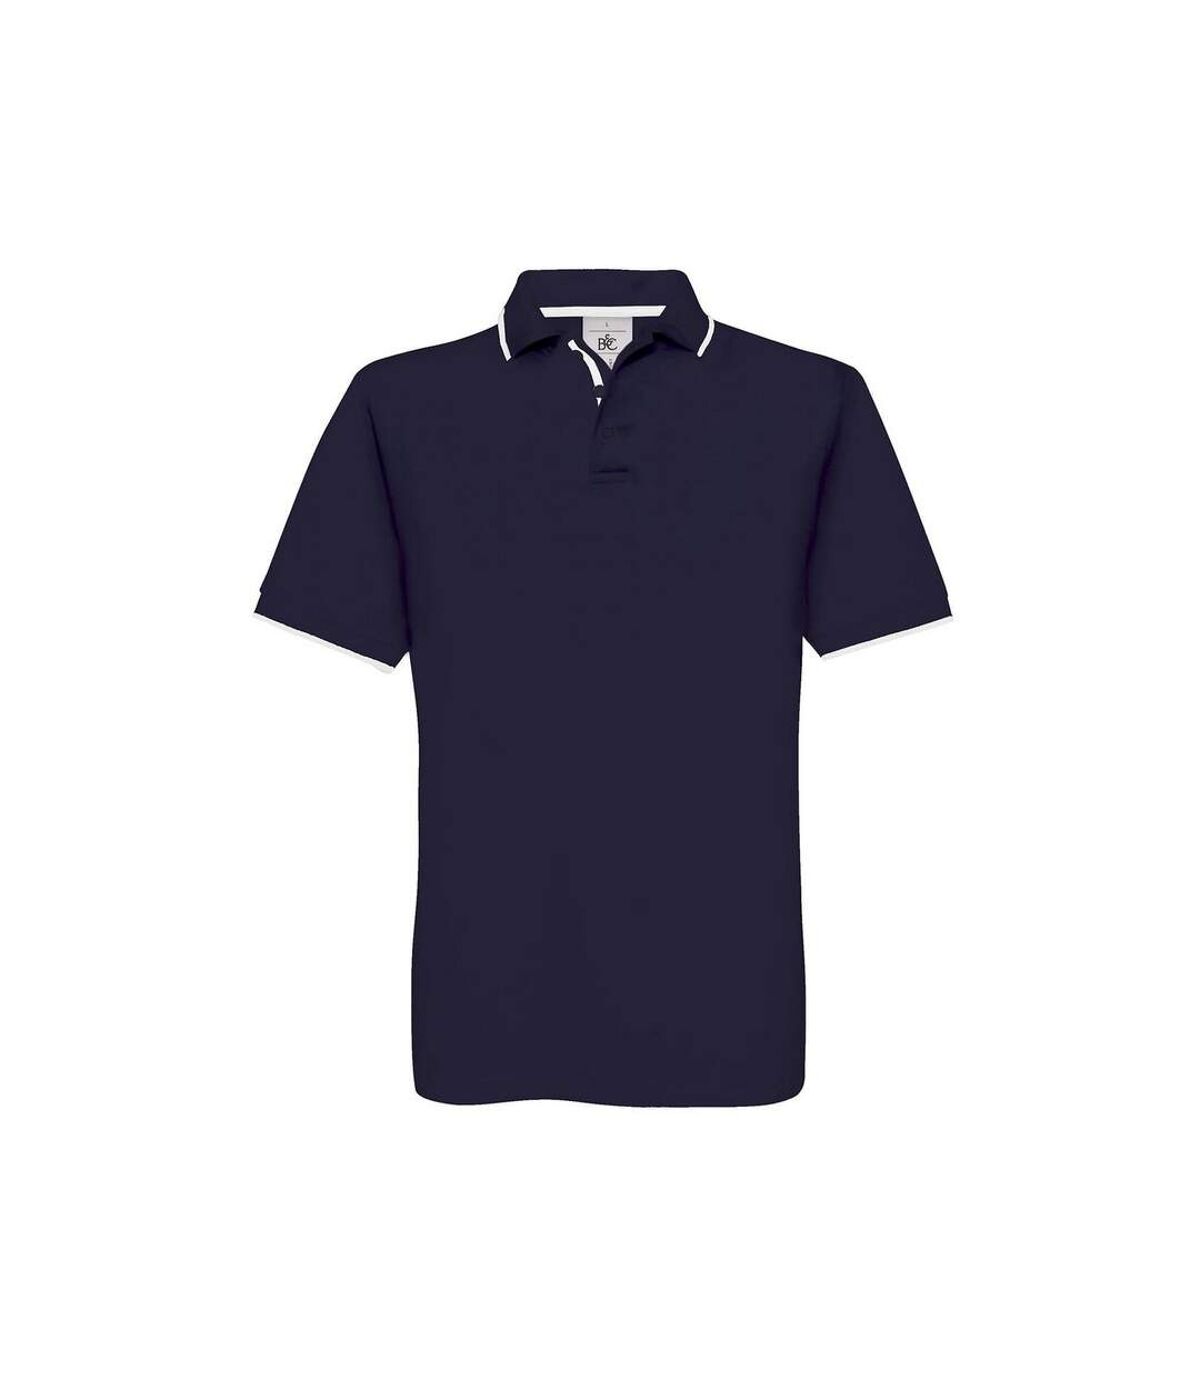 B&C Mens Safran Sport Plain Short Sleeve Polo Shirt (Navy/White)